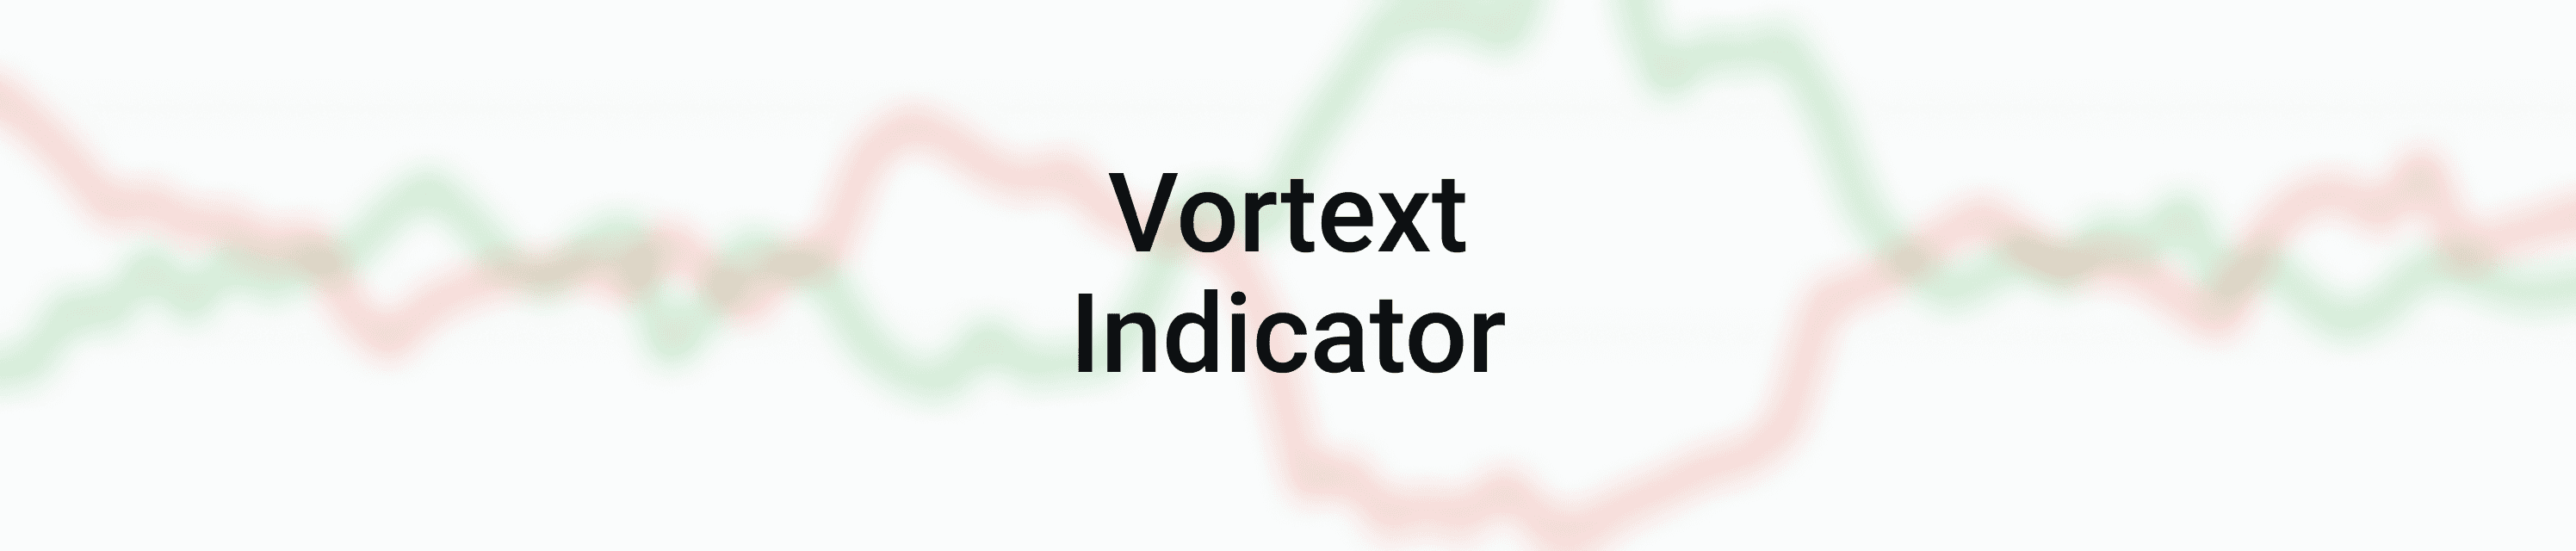 Vortex Indicator